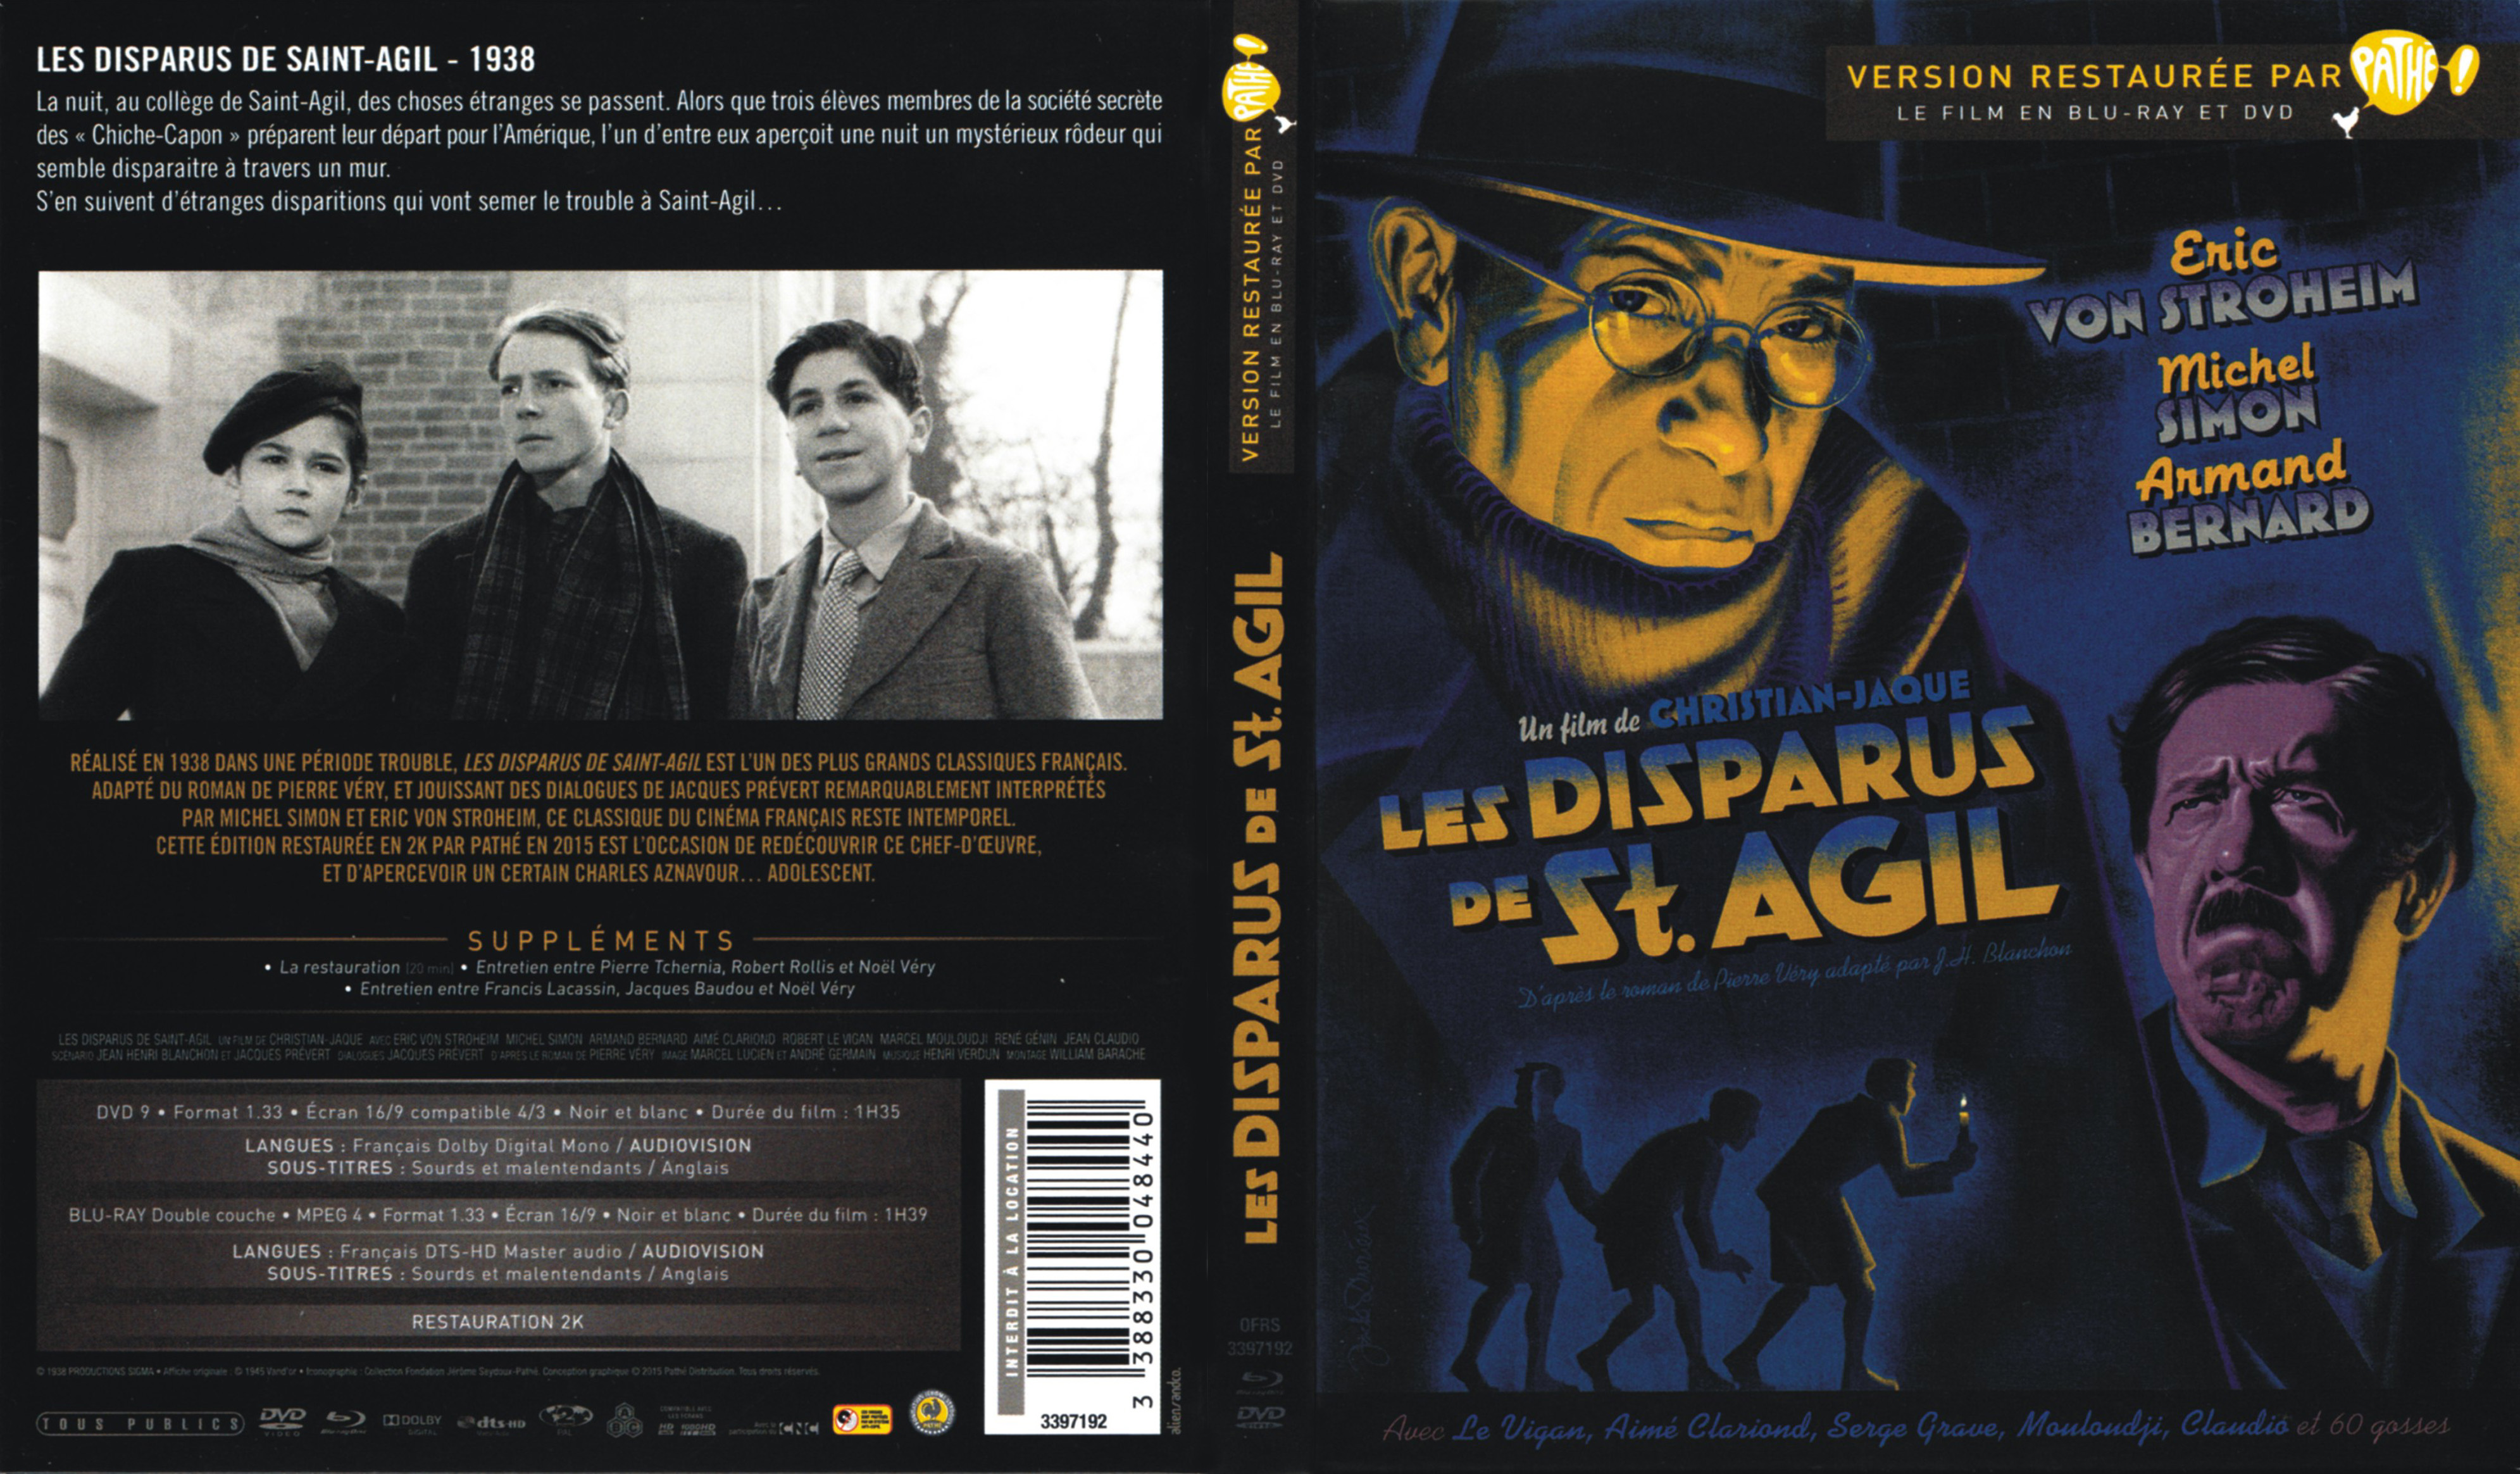 Jaquette DVD Les disparus de Saint-Agil (BLU-RAY)